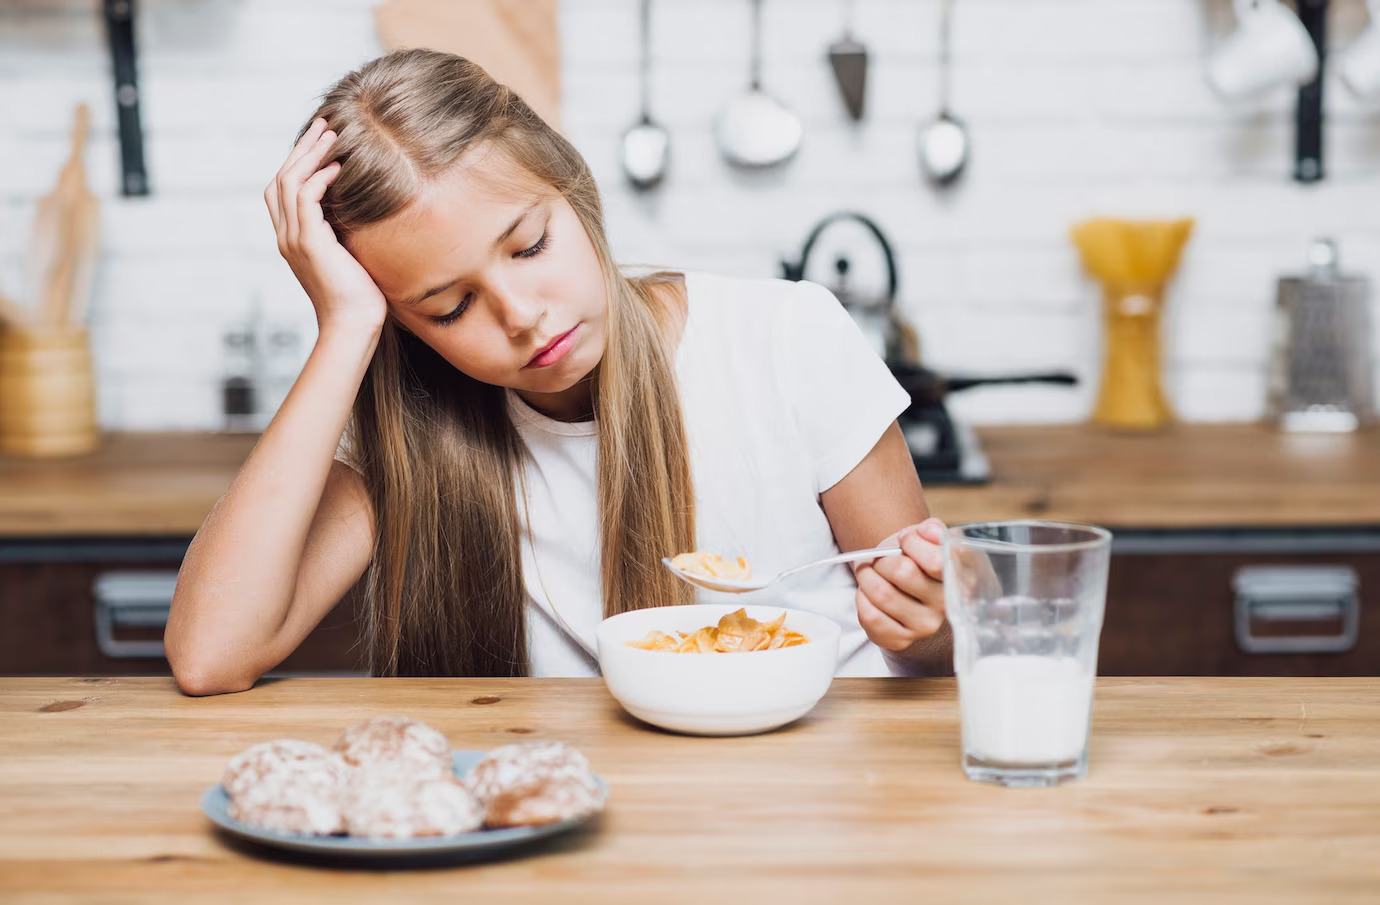 Mituri despre alergiile alimentare la copii. Unele sunt chiar periculoase